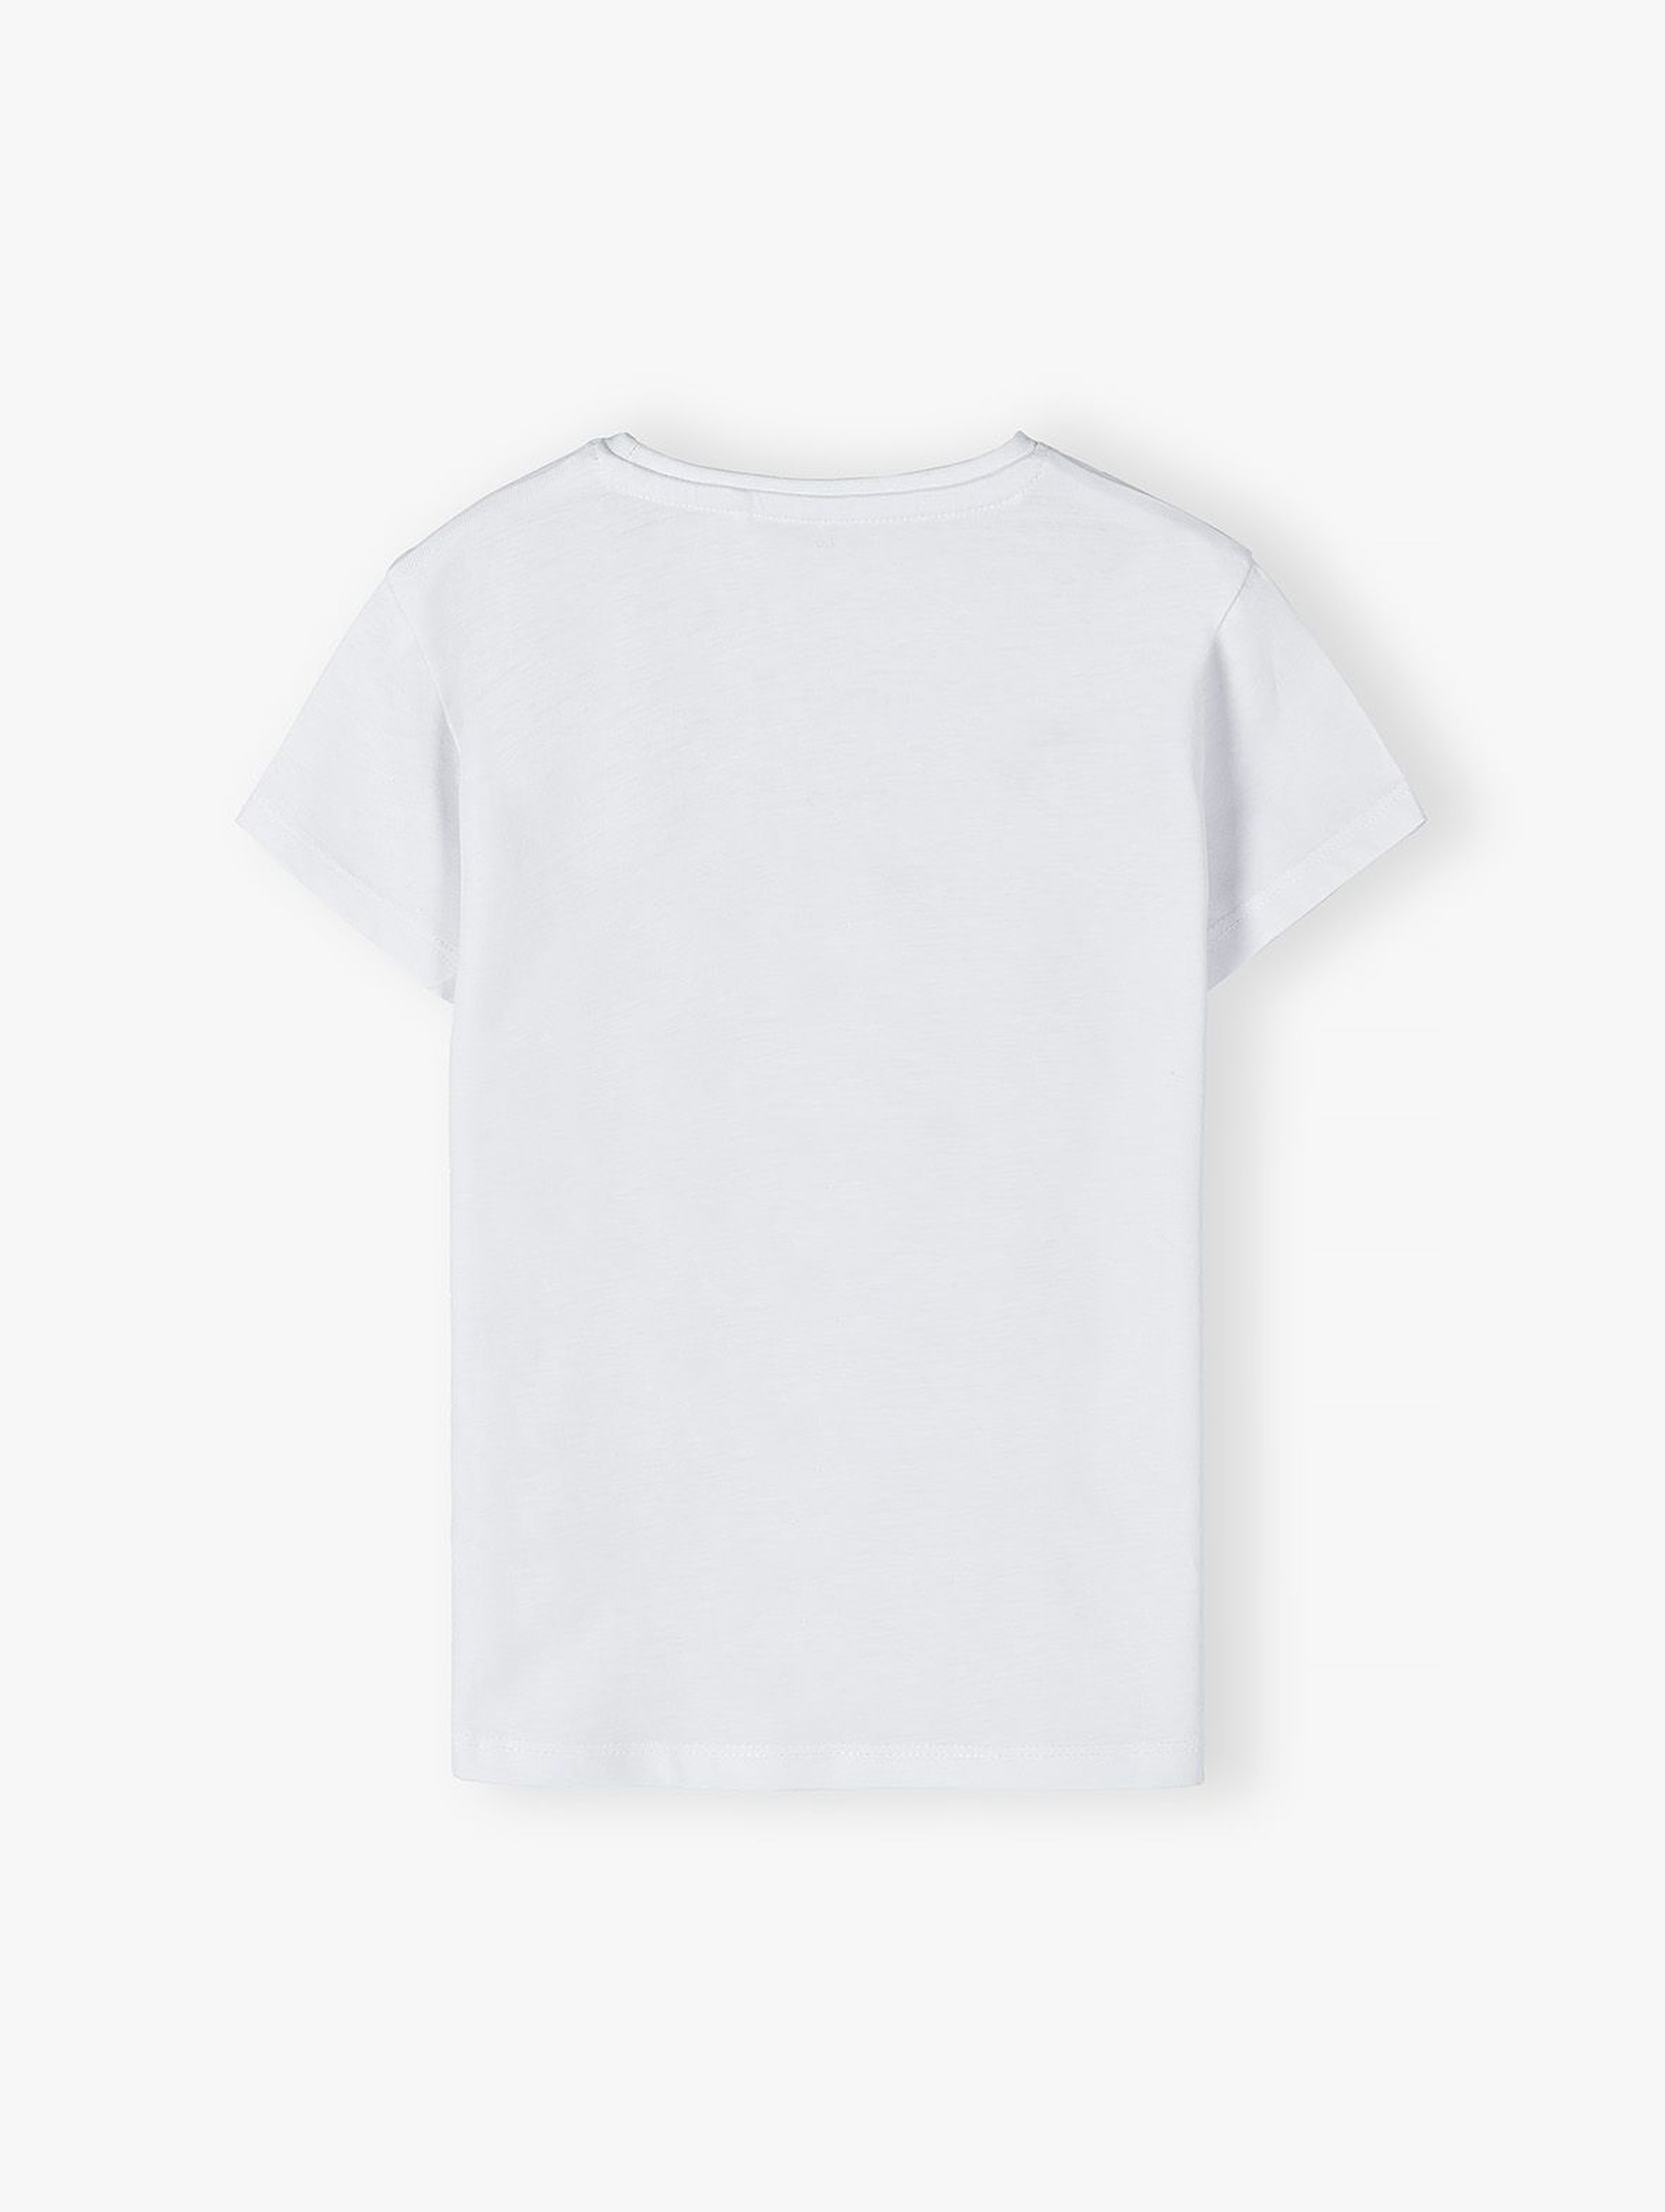 Dzianinowy T-shirt dla dziewczynki - biały z serduszkiem